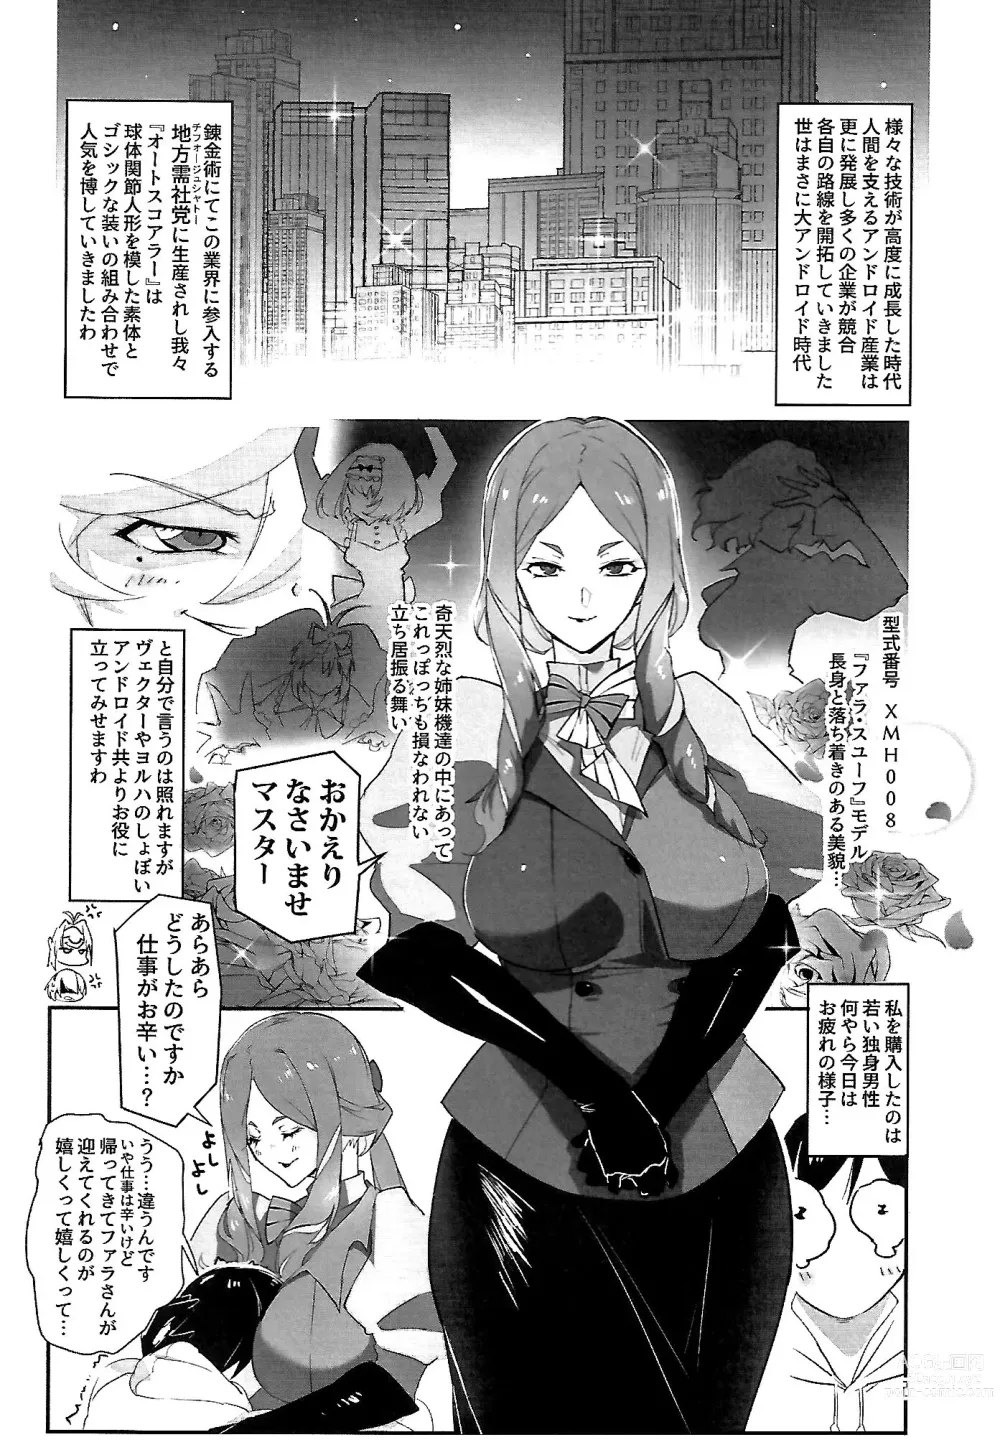 Page 2 of doujinshi Anata ga Master